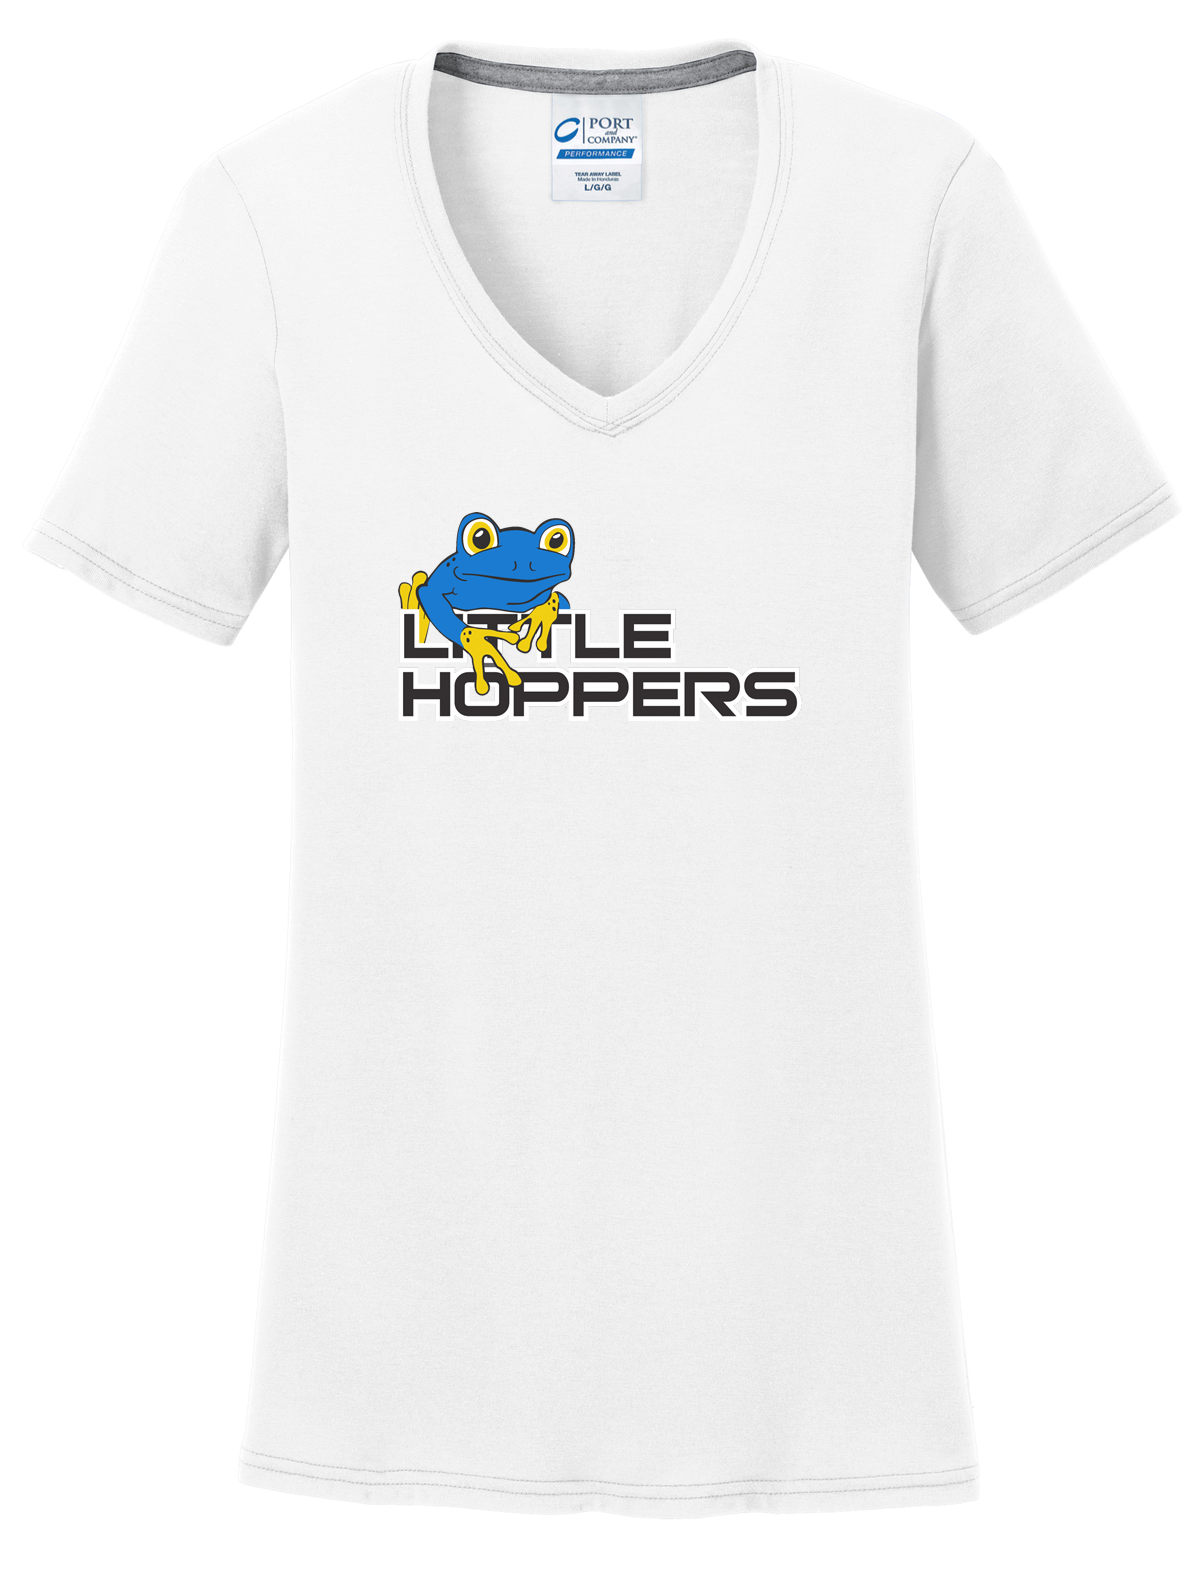 Little Hoppers Women's White T-Shirt